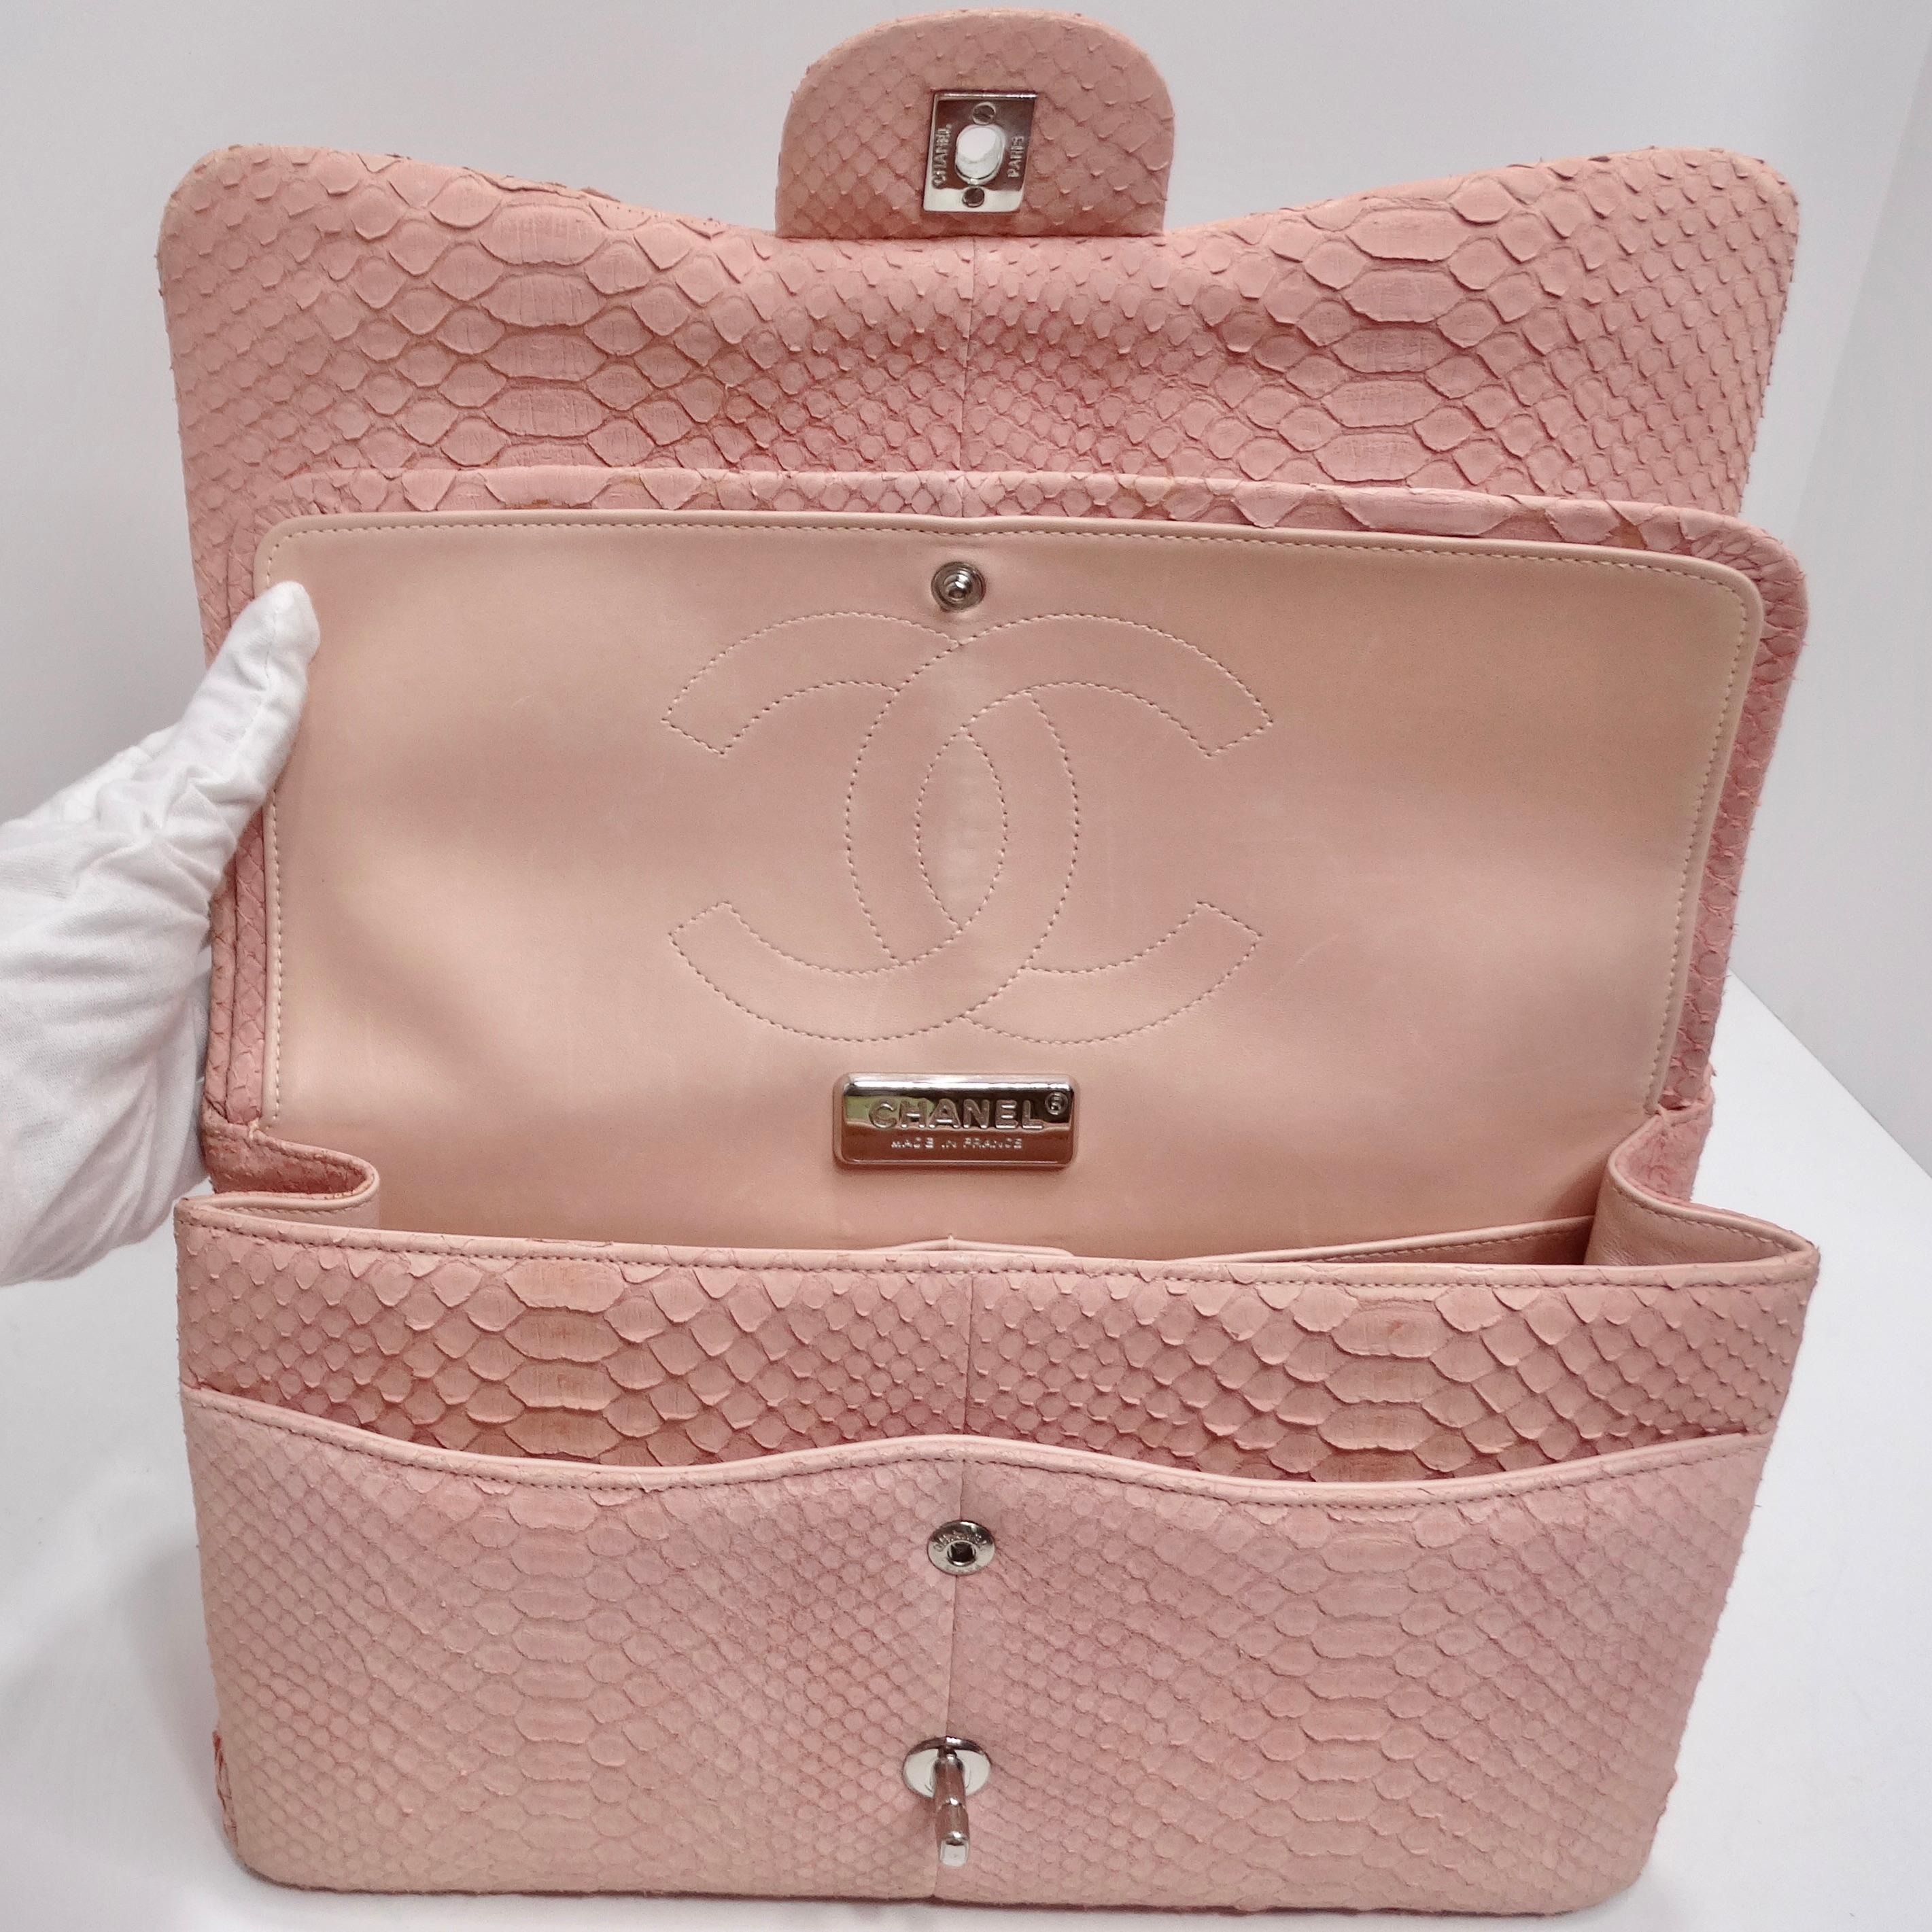 Chanel Pink Python Jumbo Double Flap Handbag For Sale 9